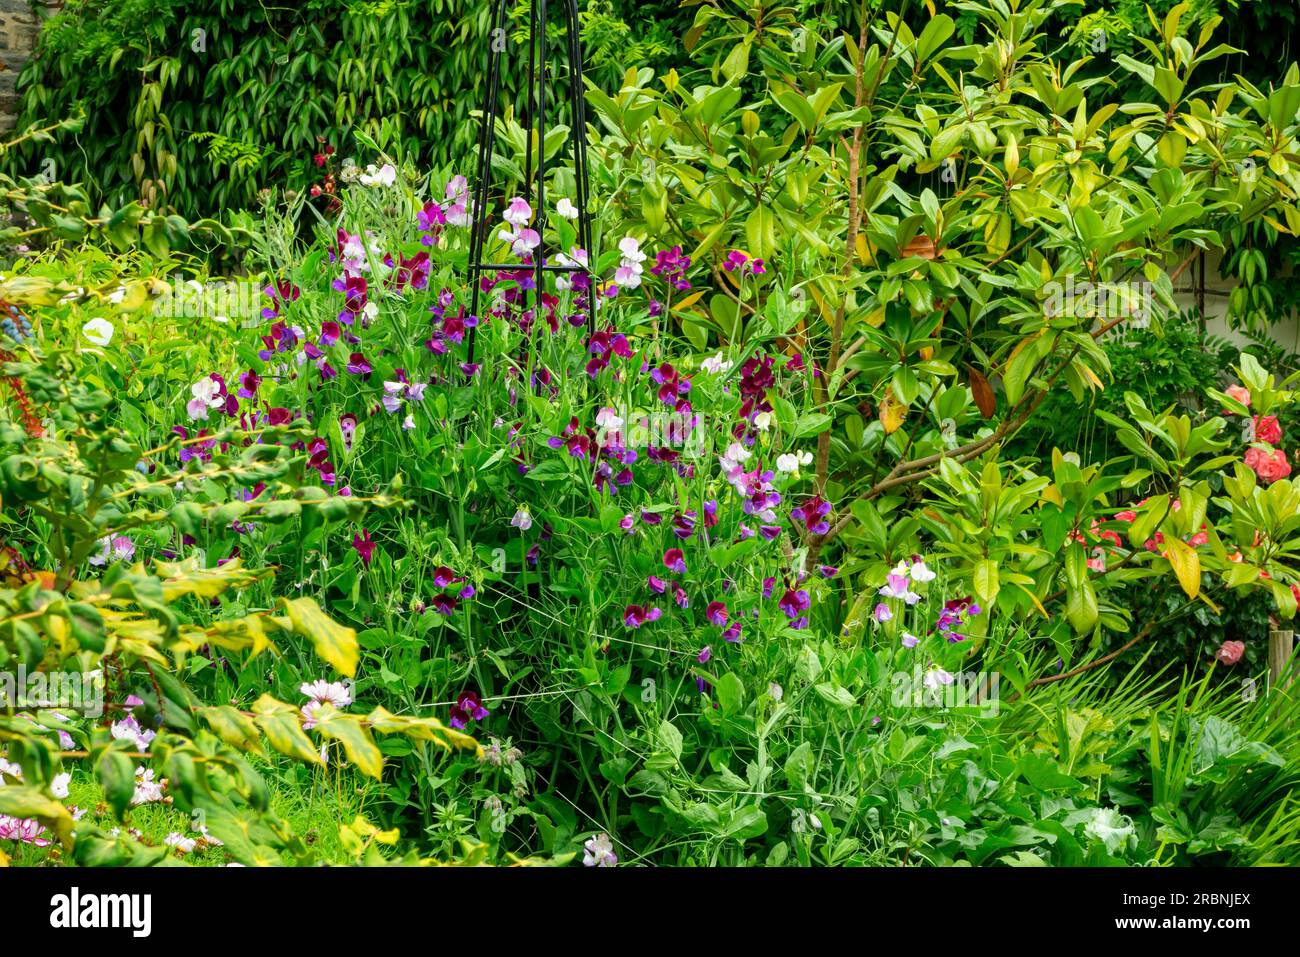 Gartengrenzen - die süße Erbse, Lathyrus odoratus, ist eine blühende Pflanze der Gattung Lathyrus in der Familie Fabaceae (Hülsenfrüchte), die in Südeuropa heimisch ist. Stockfoto